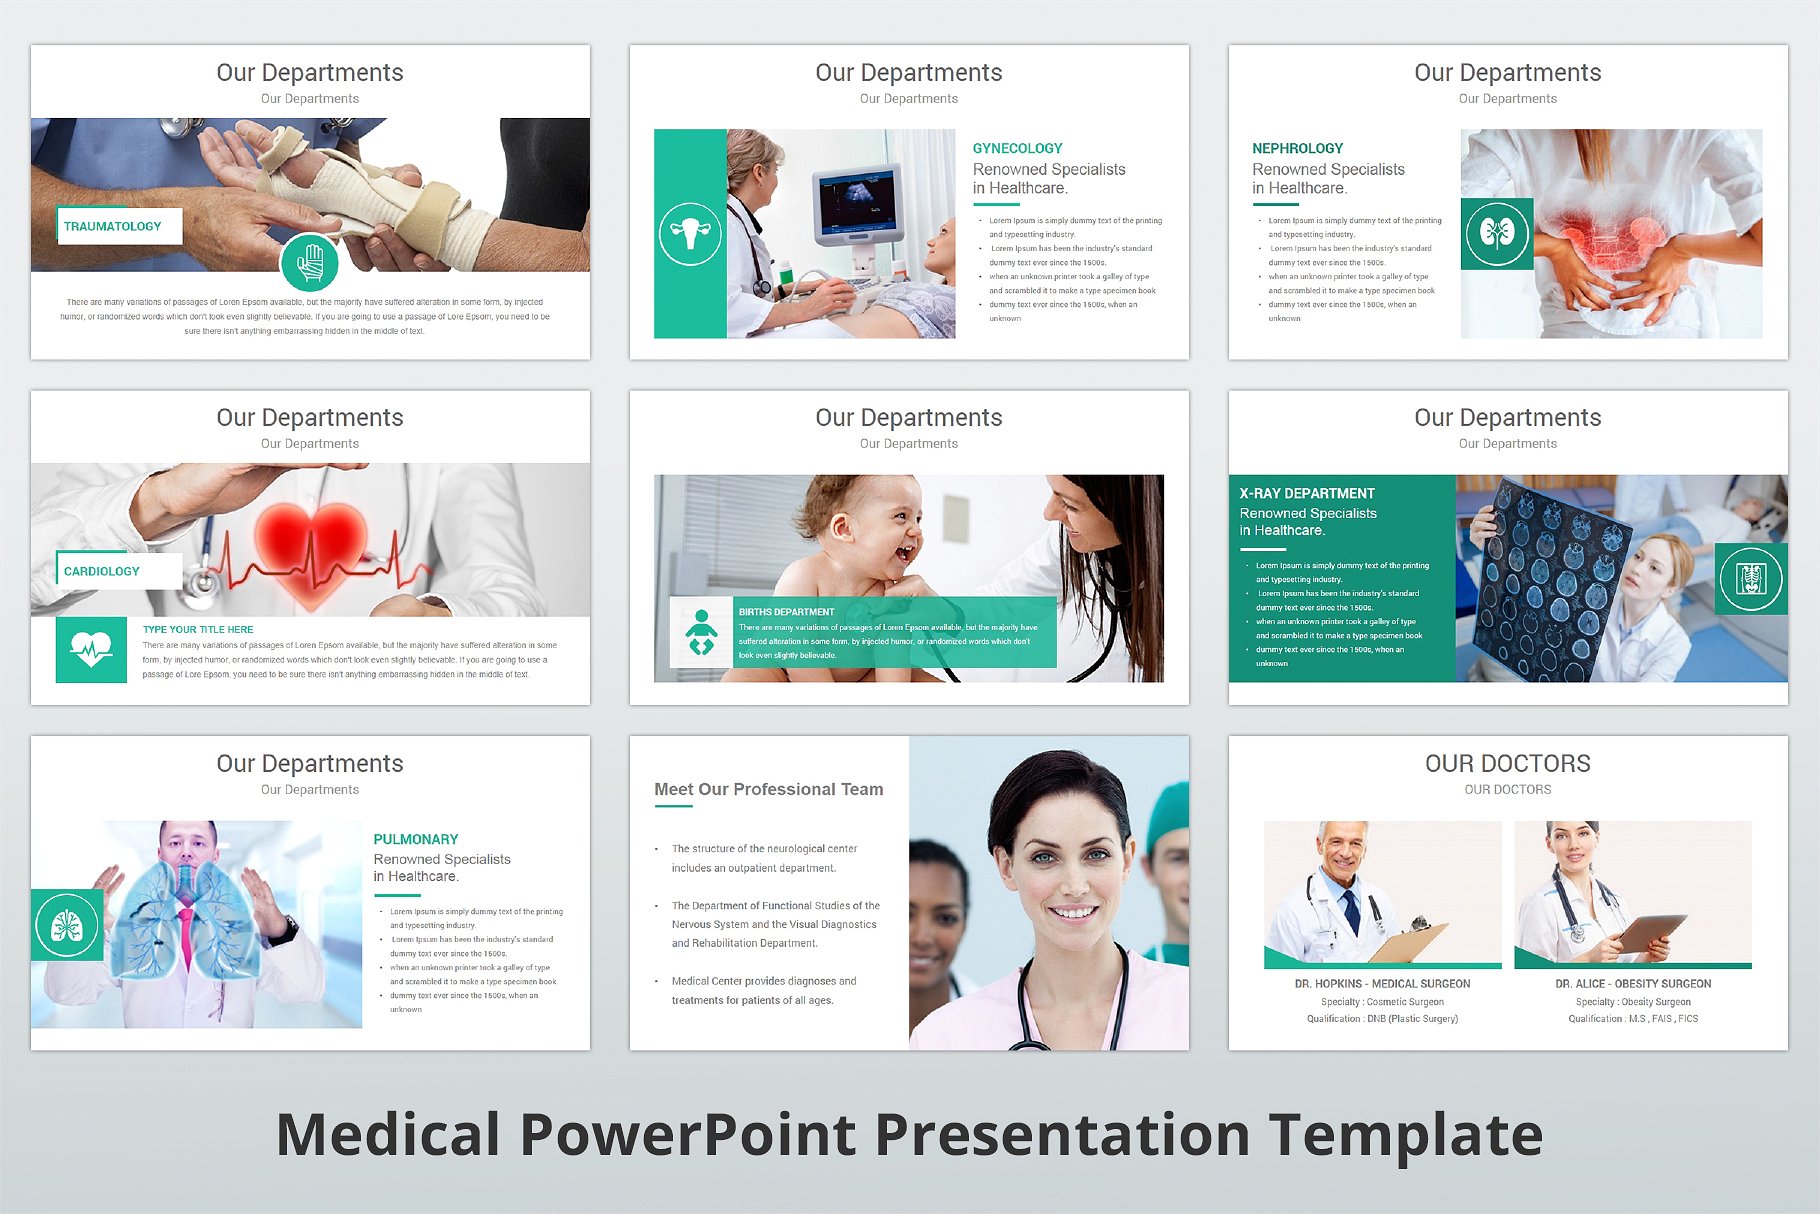 高品质医疗行业演示的PPT模板下载 Medical PowerPoint Template [pptx]插图(7)